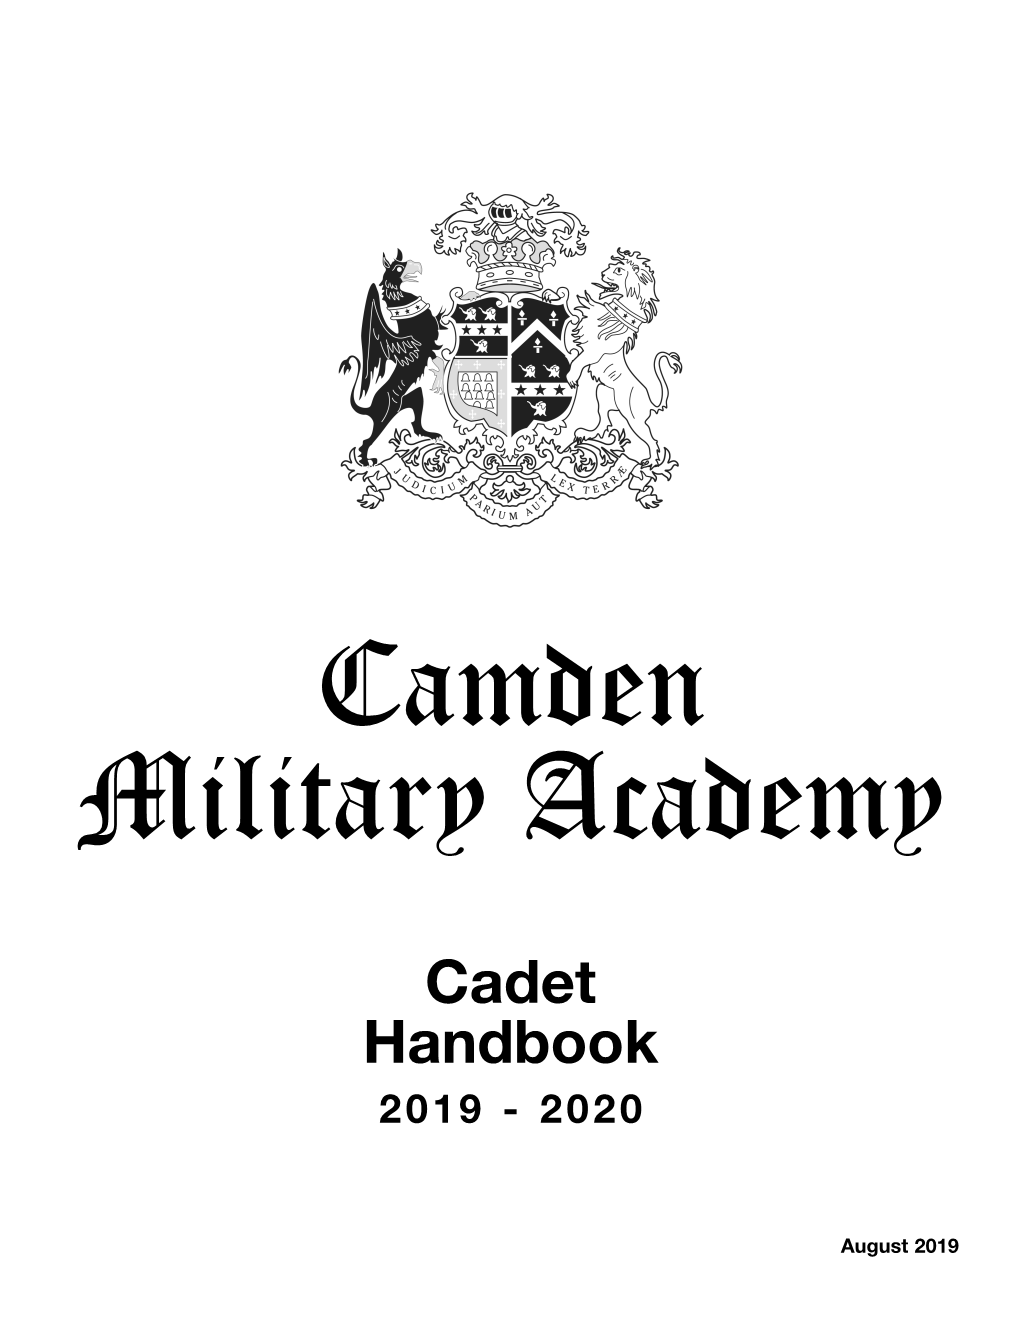 Cadet Handbook 2019 - 2020